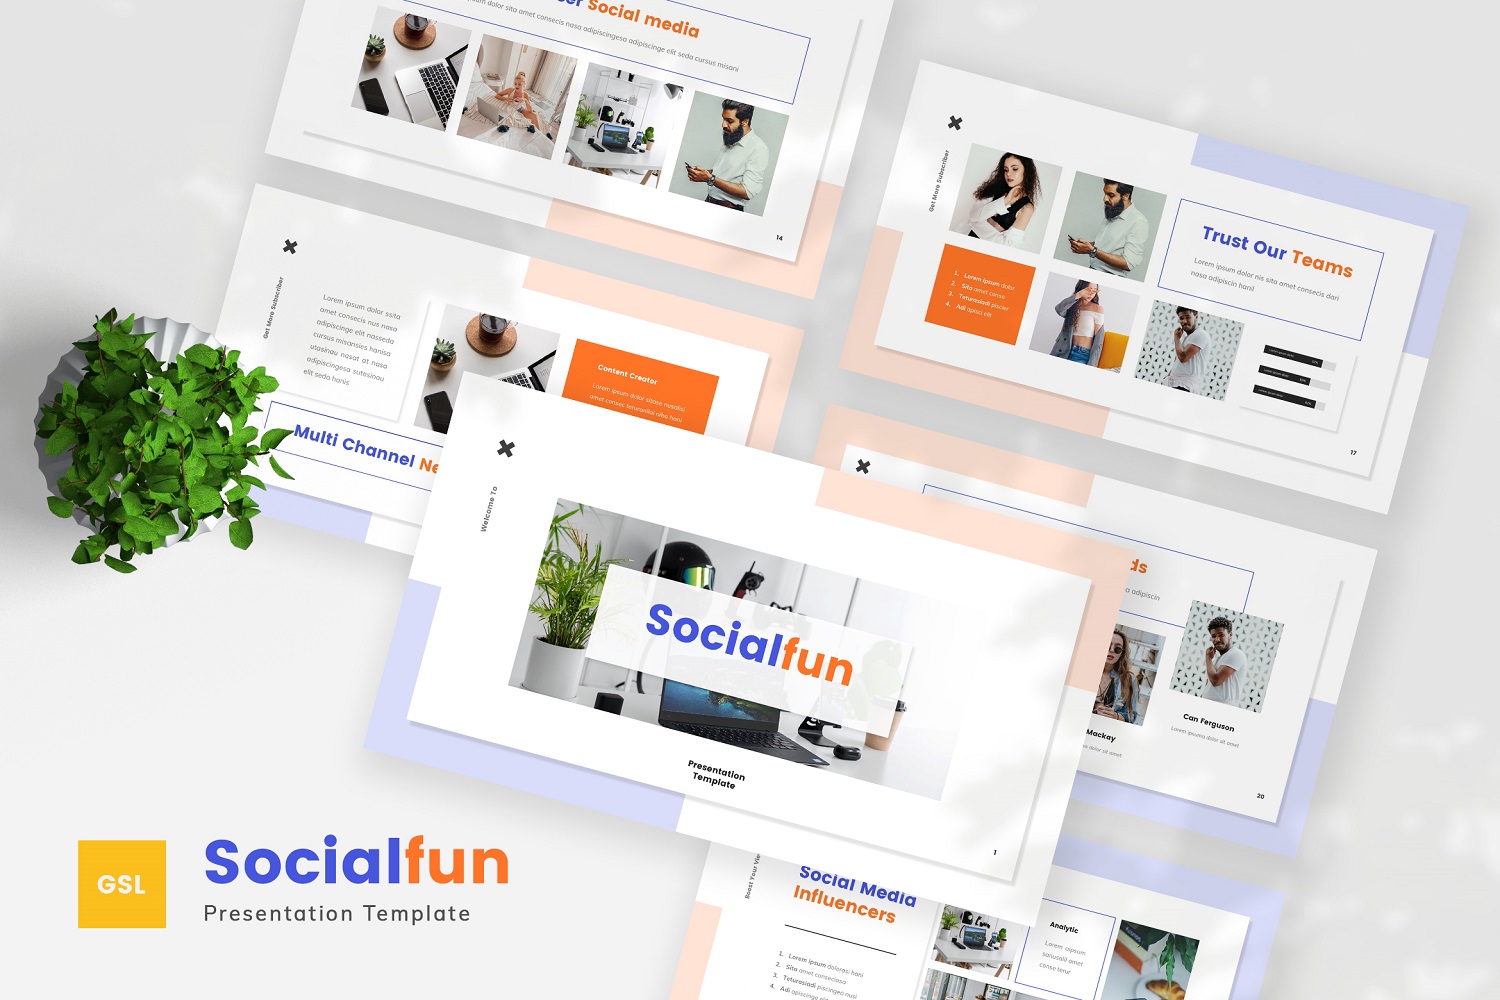 Socialfun - Social Media Google Slides Template